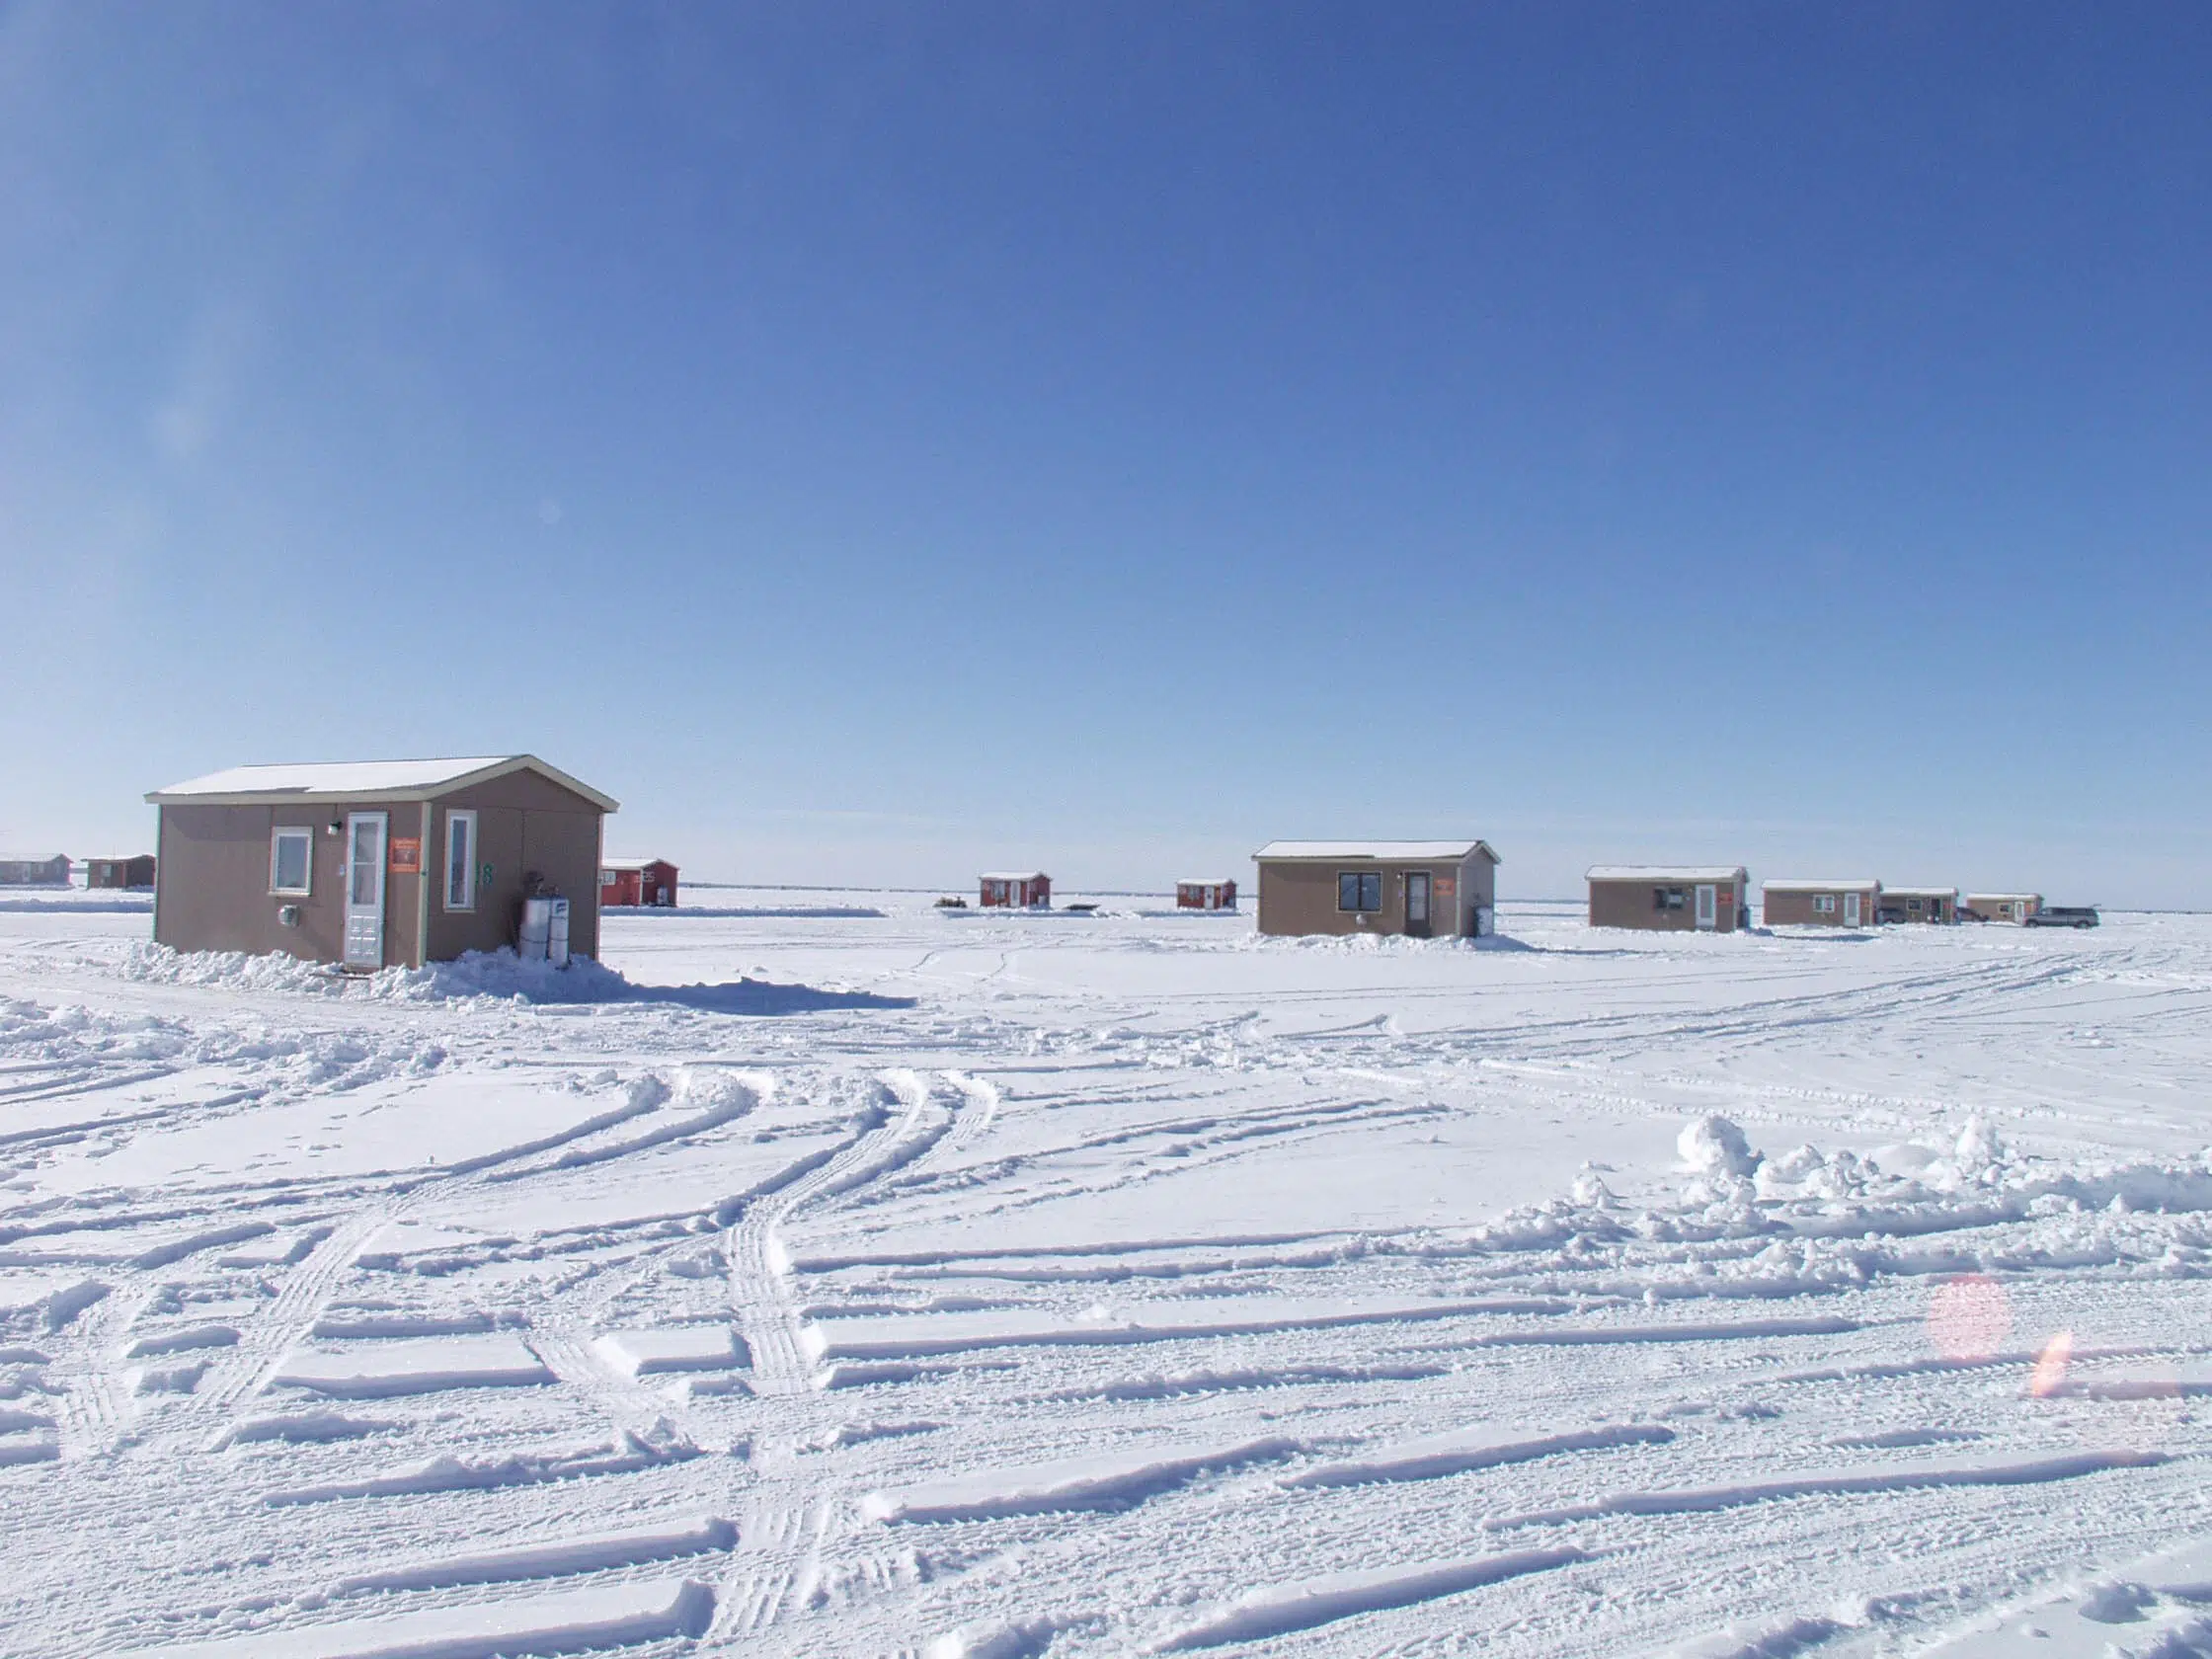 Ice fishing houses